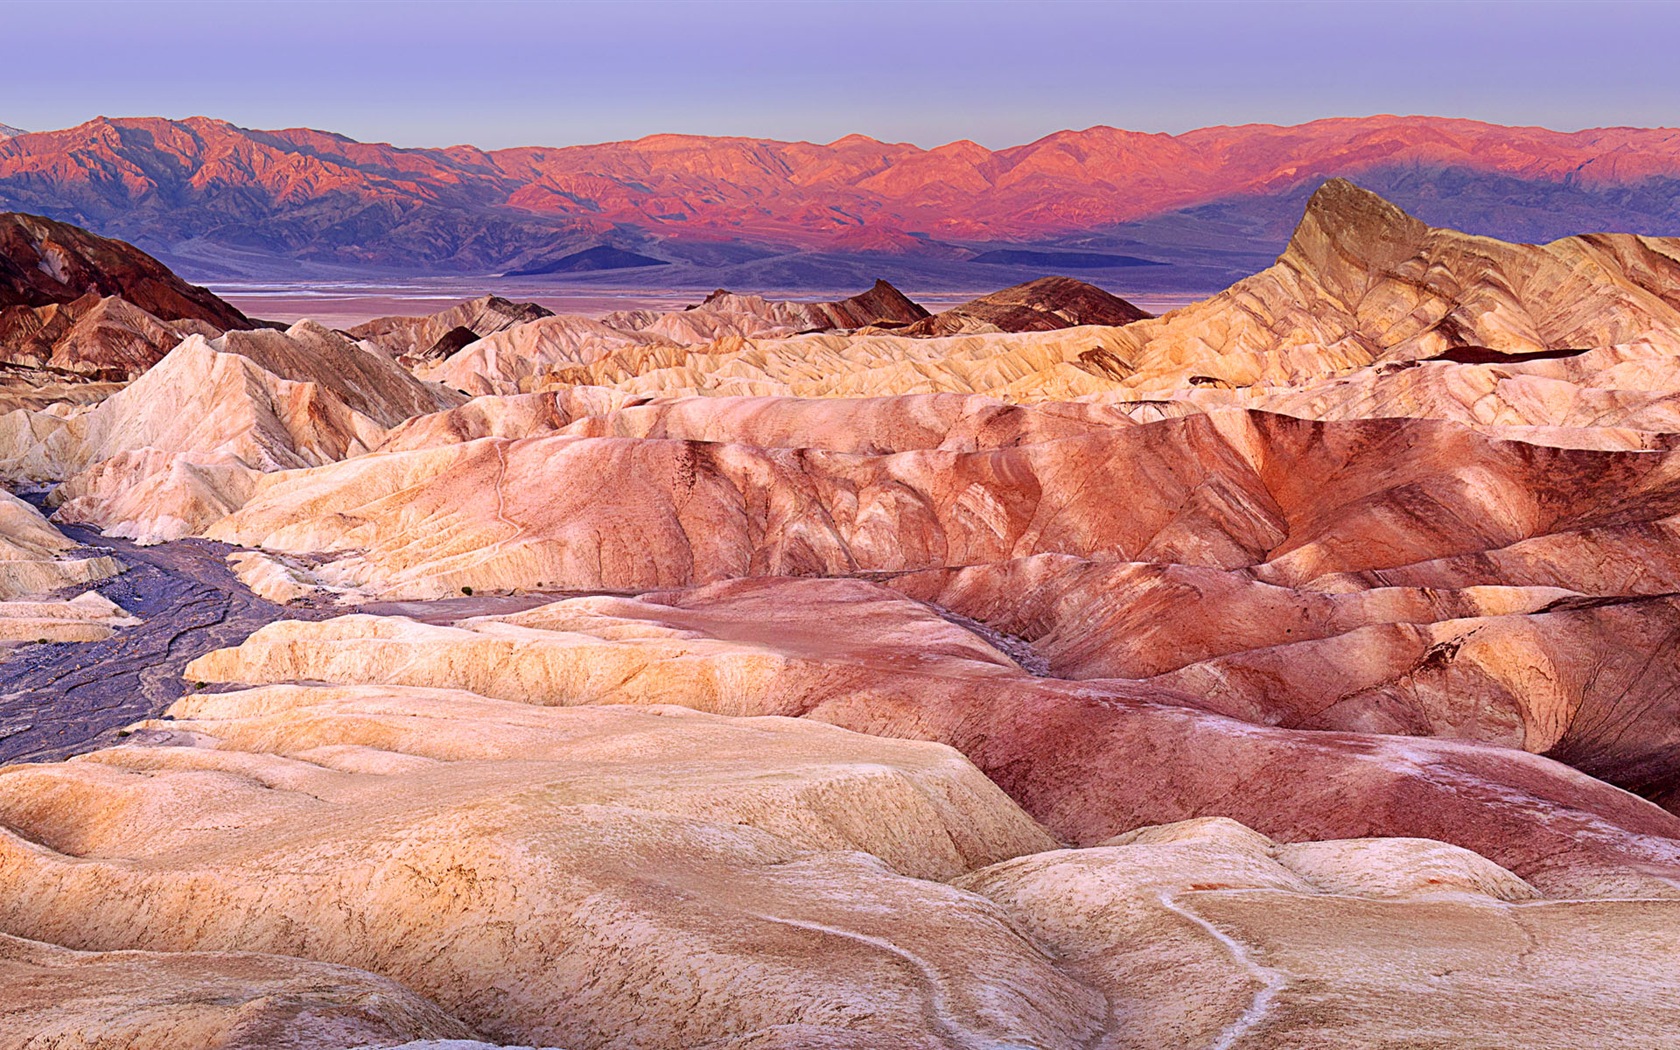 Les déserts chauds et arides, de Windows 8 fonds d'écran widescreen panoramique #10 - 1680x1050